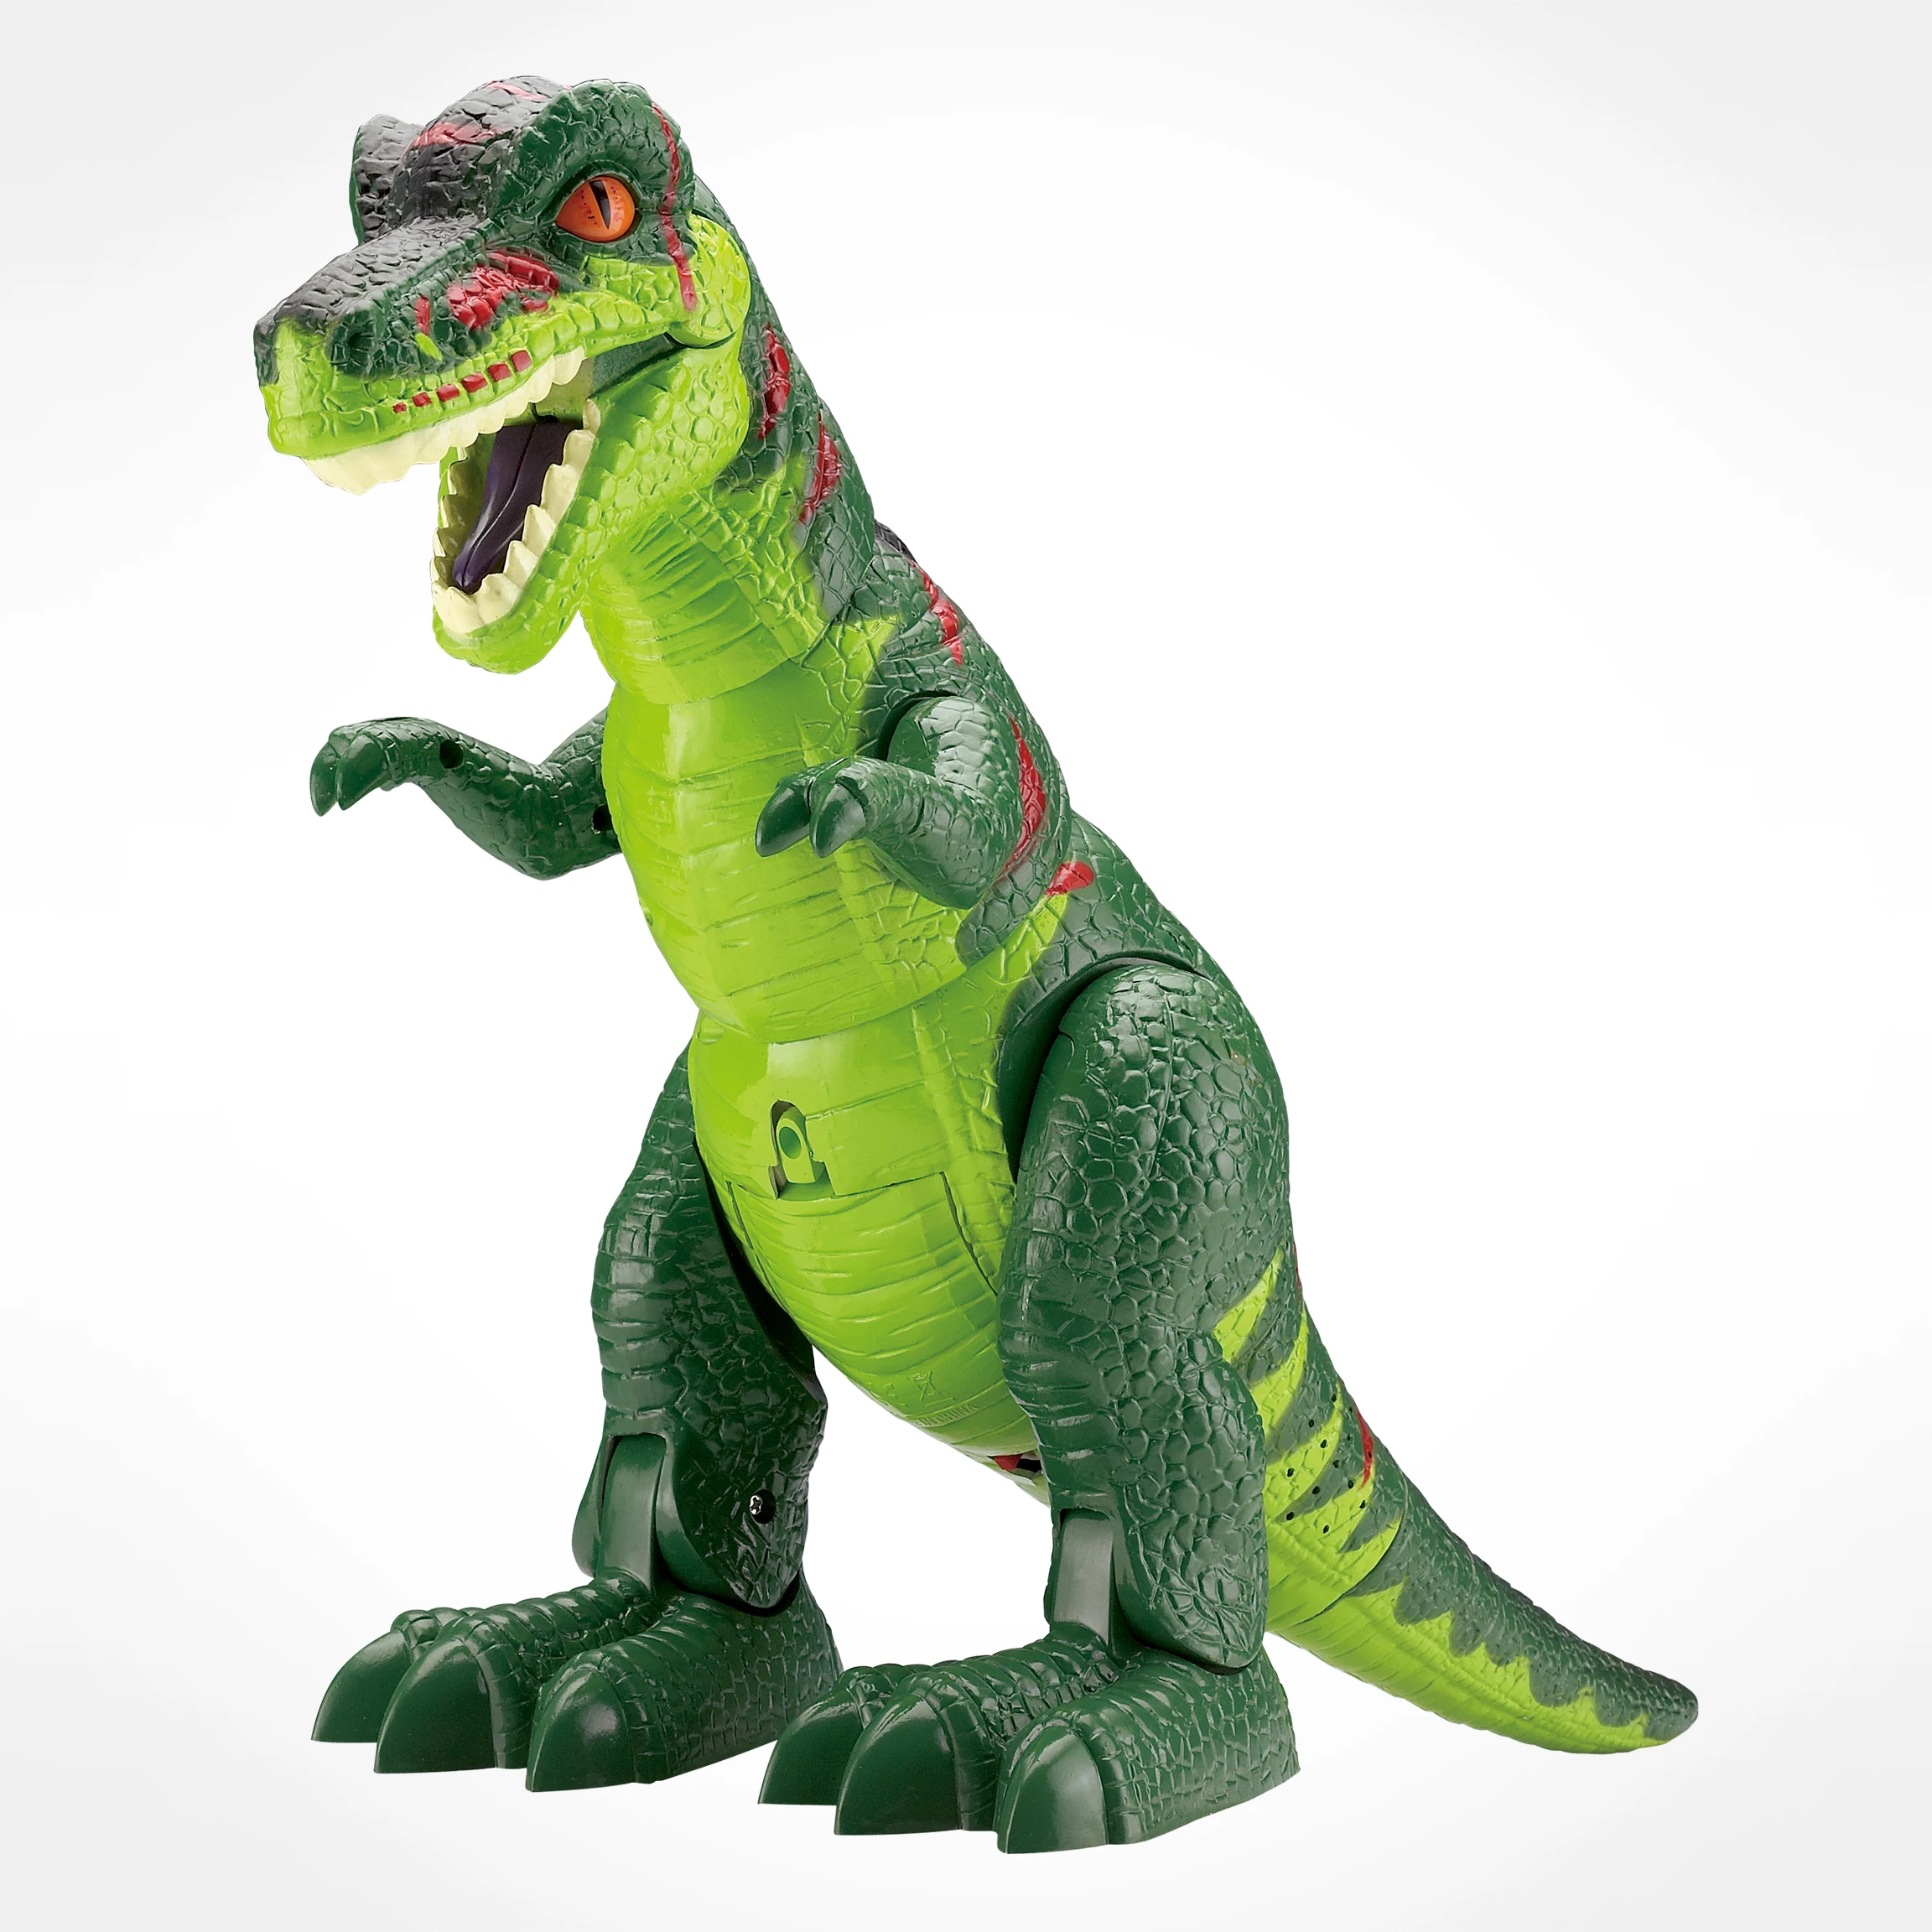 電池式電動ロボット恐竜おもちゃセット Buy 恐竜のおもちゃセット 電気ロボット恐竜のおもちゃ バッテリー駆動の恐竜toyset Product On Alibaba Com